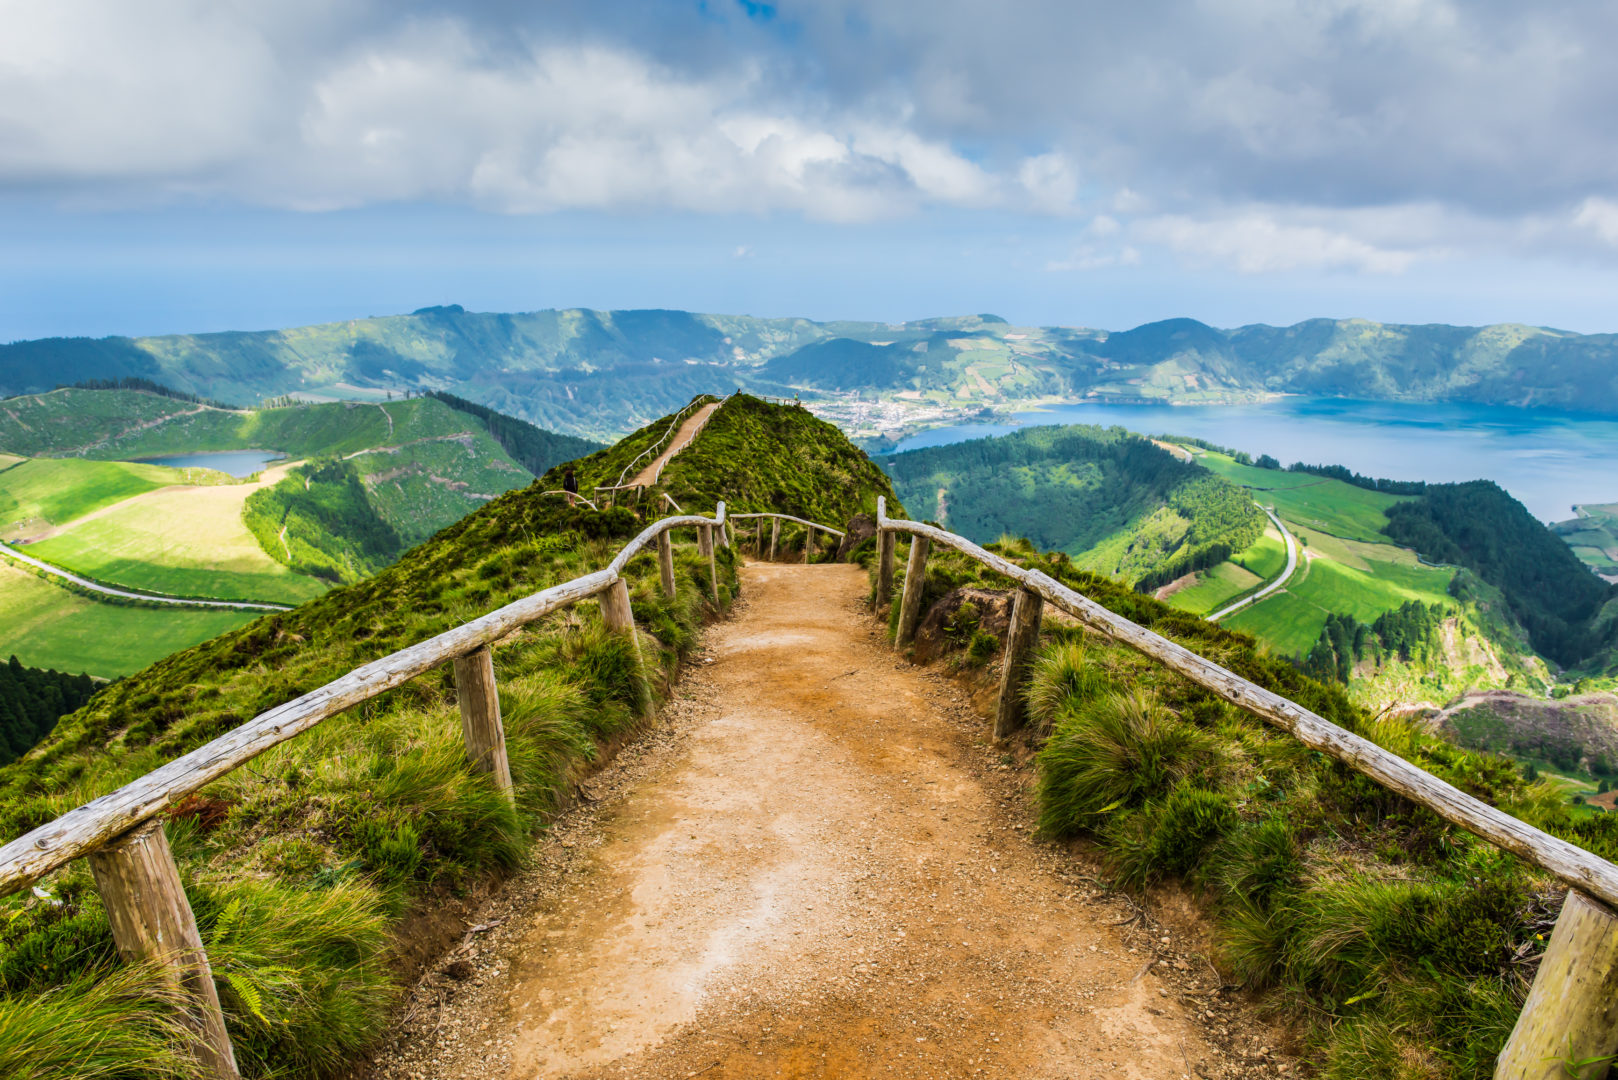 Aussichtspunkt Pico do Carvao, Reise auf die Azoren